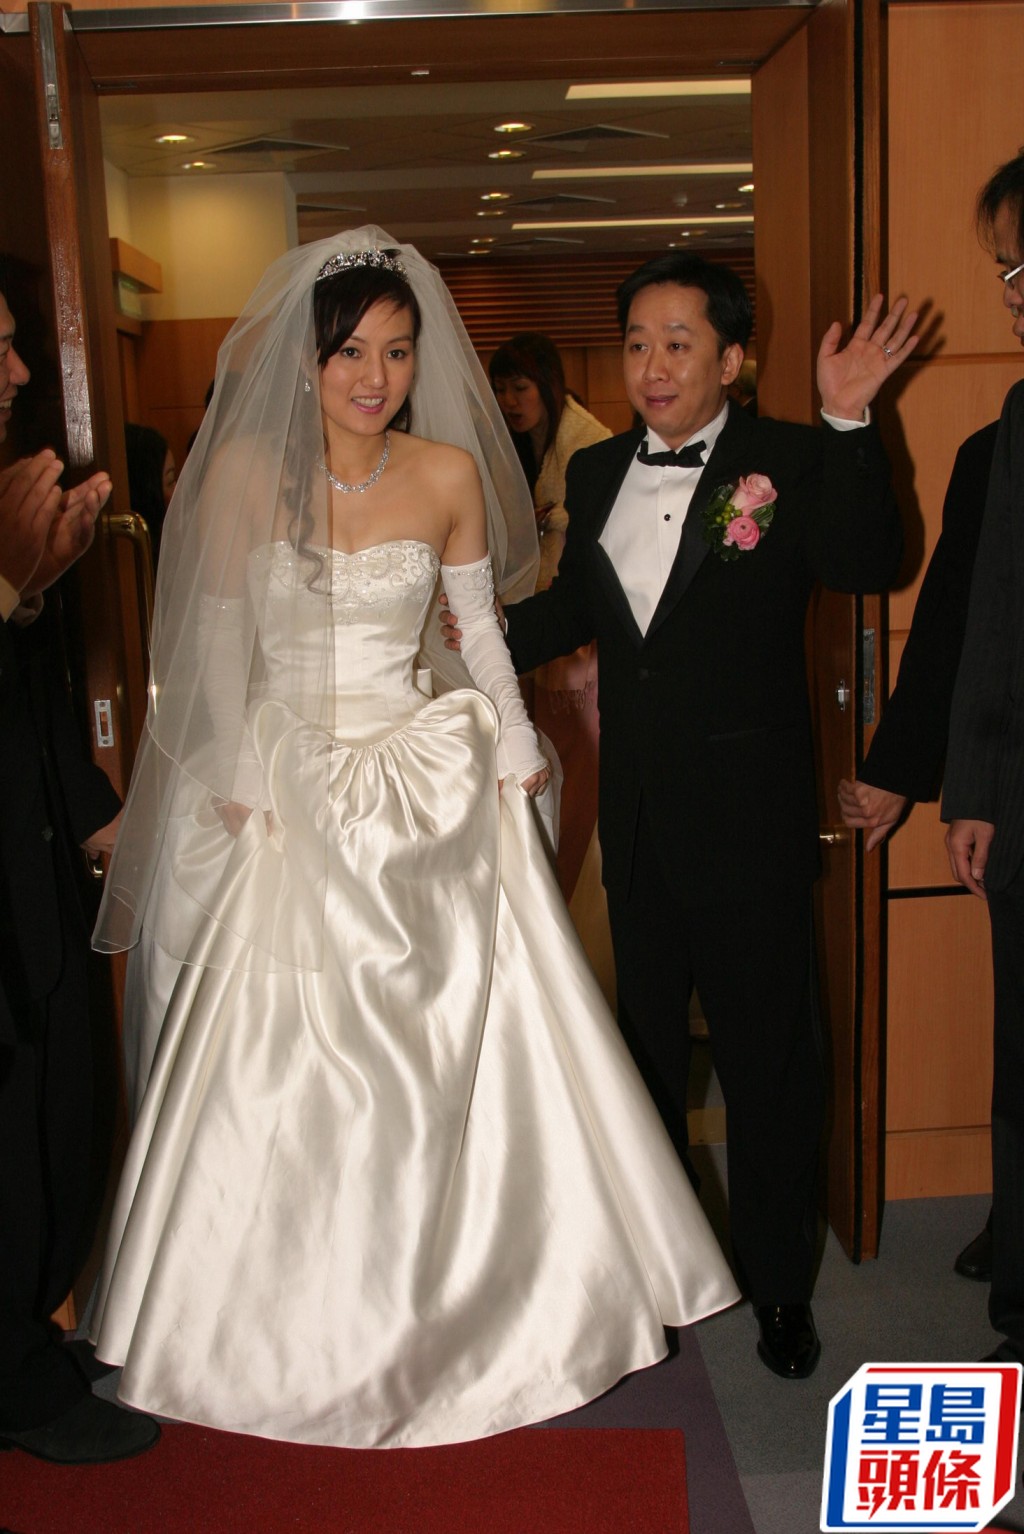 鄧兆榮結婚時搞得非常盛大。